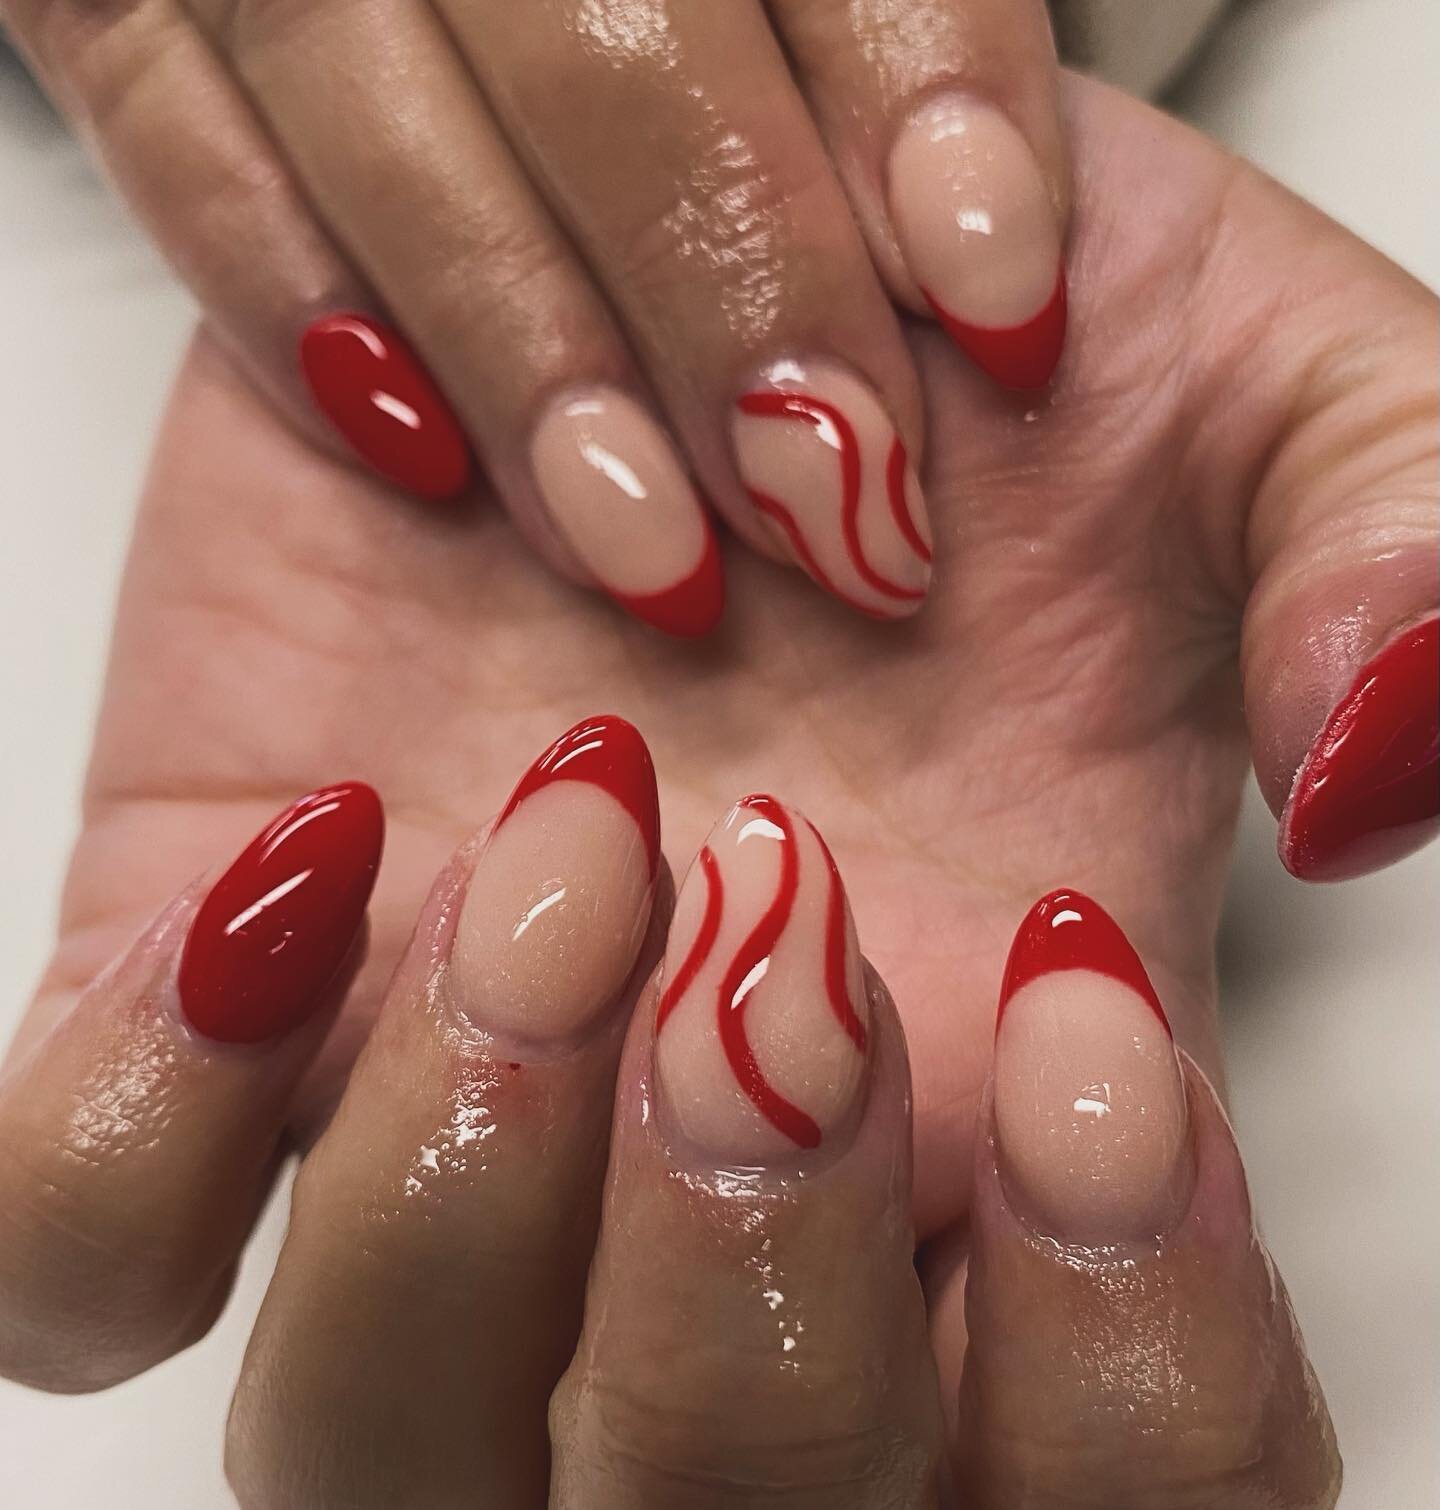 I absolutely love red nails!!! 

#frenchtips #acrylicnails #almond #nails #nailtech #cardiffsalon #caerau #semipermanentcosmetics #nailsbyjojo